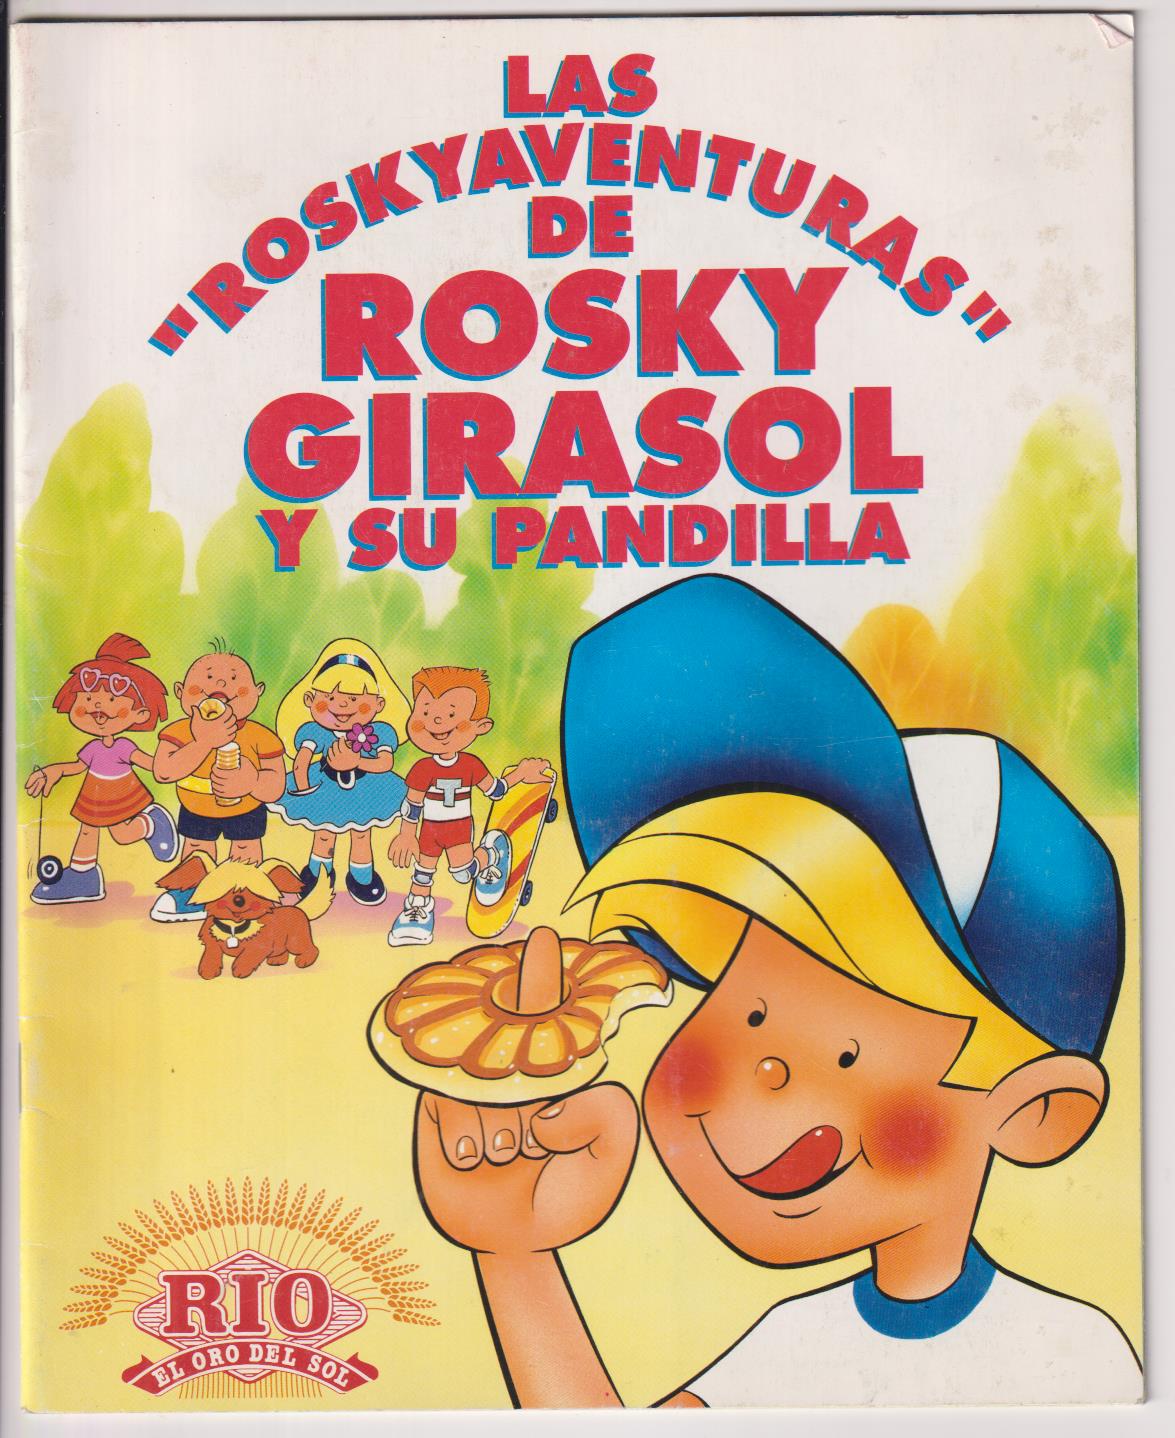 Roskyaventuras de Rosky Girasol y su Pandilla. Álbum vacío Completamente Nuevo